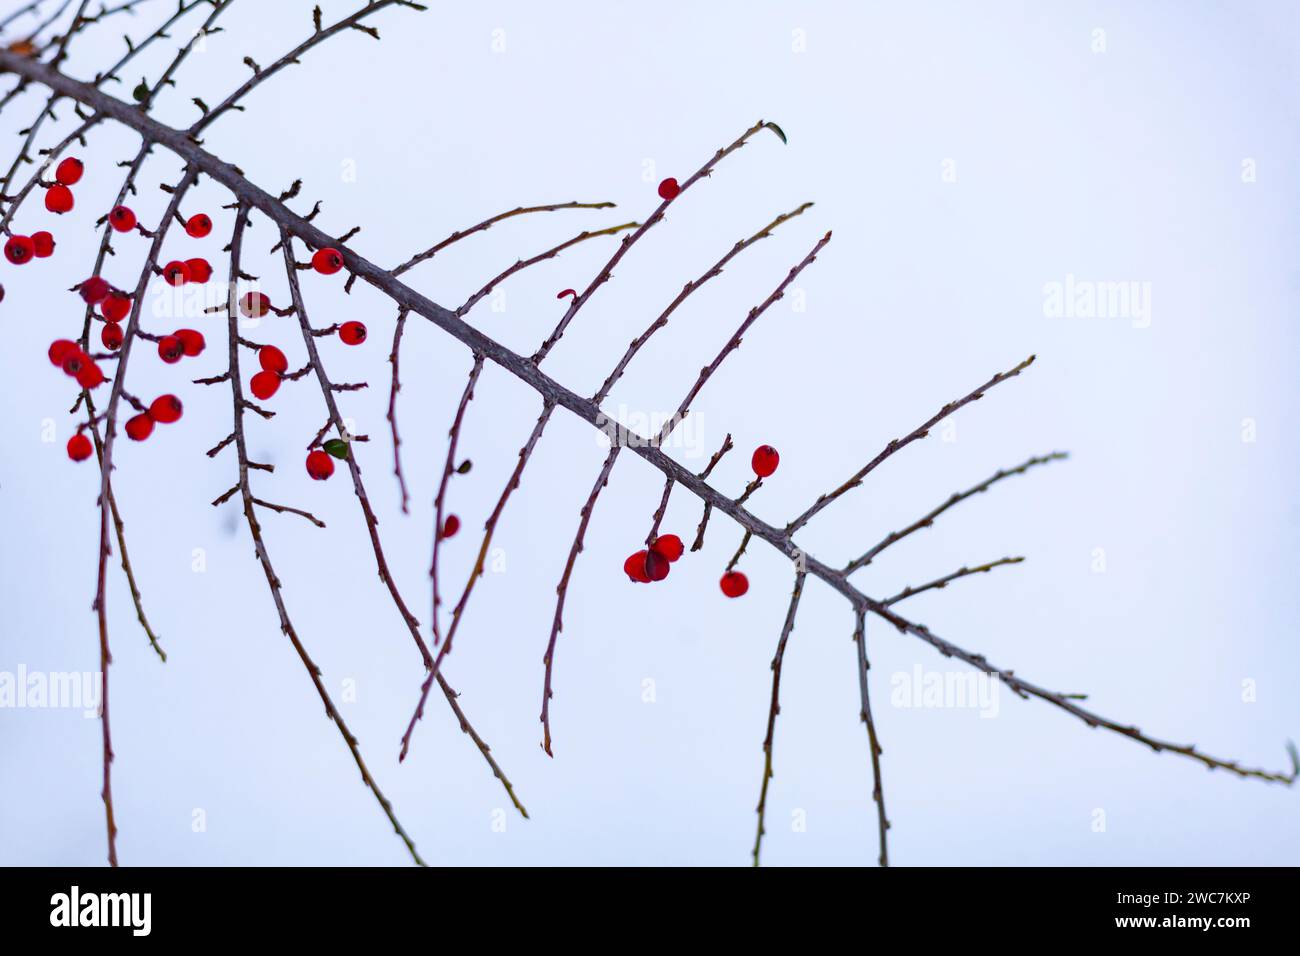 Cespuglio con bacche rosse in una nevicata. Scena invernale invernale. Messa a fuoco selettiva. Foto Stock